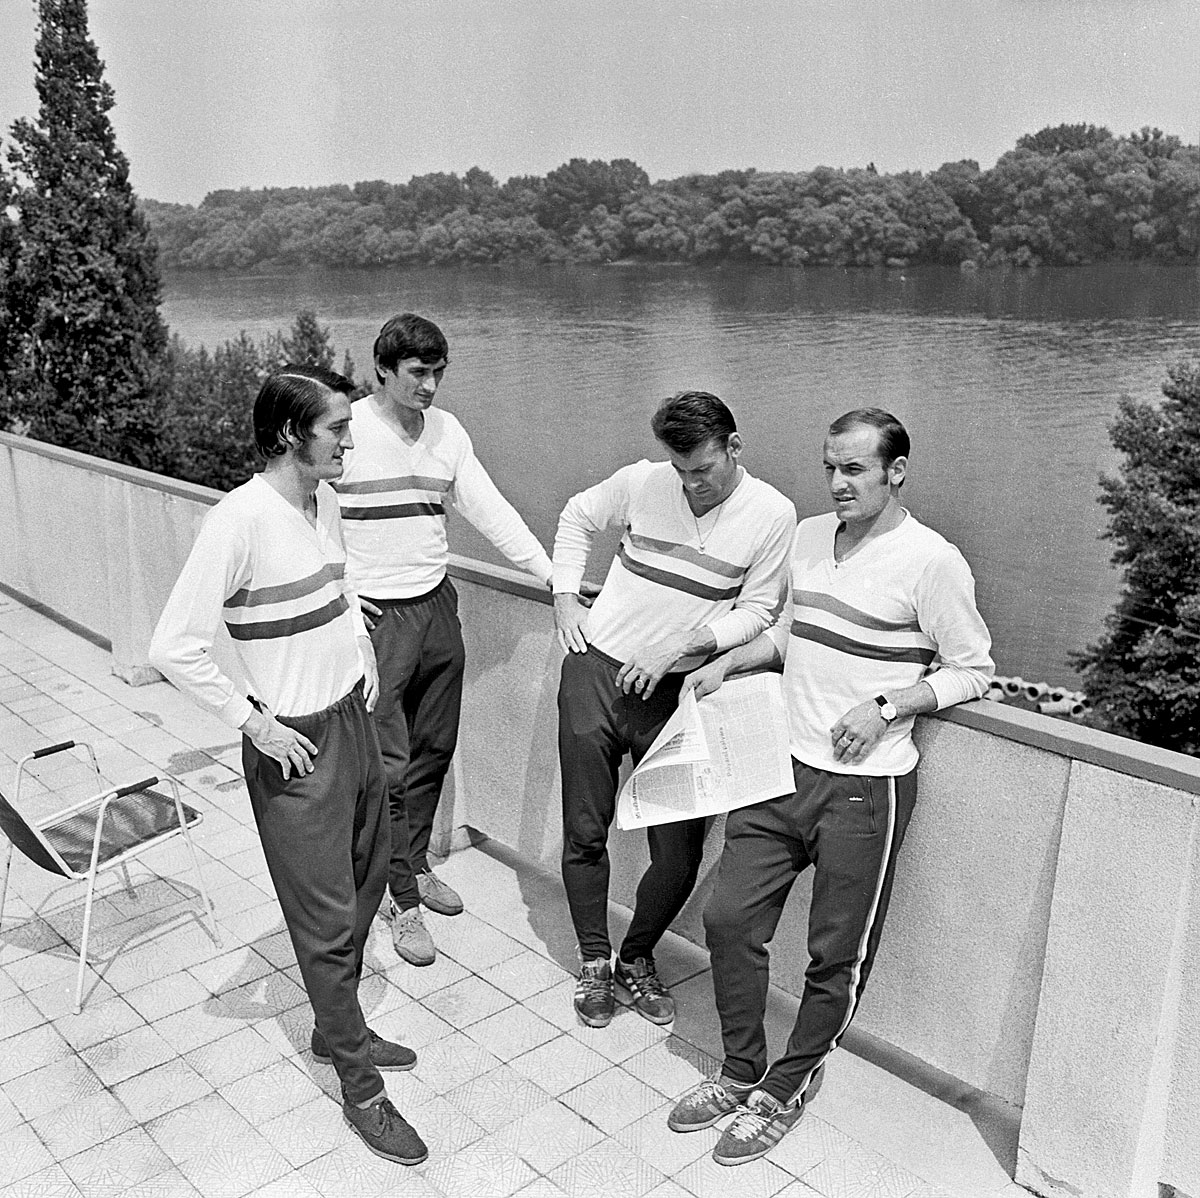 Kű, Dunai, Szűcs és Bene lazítanak a Római-parton 1972 májusában